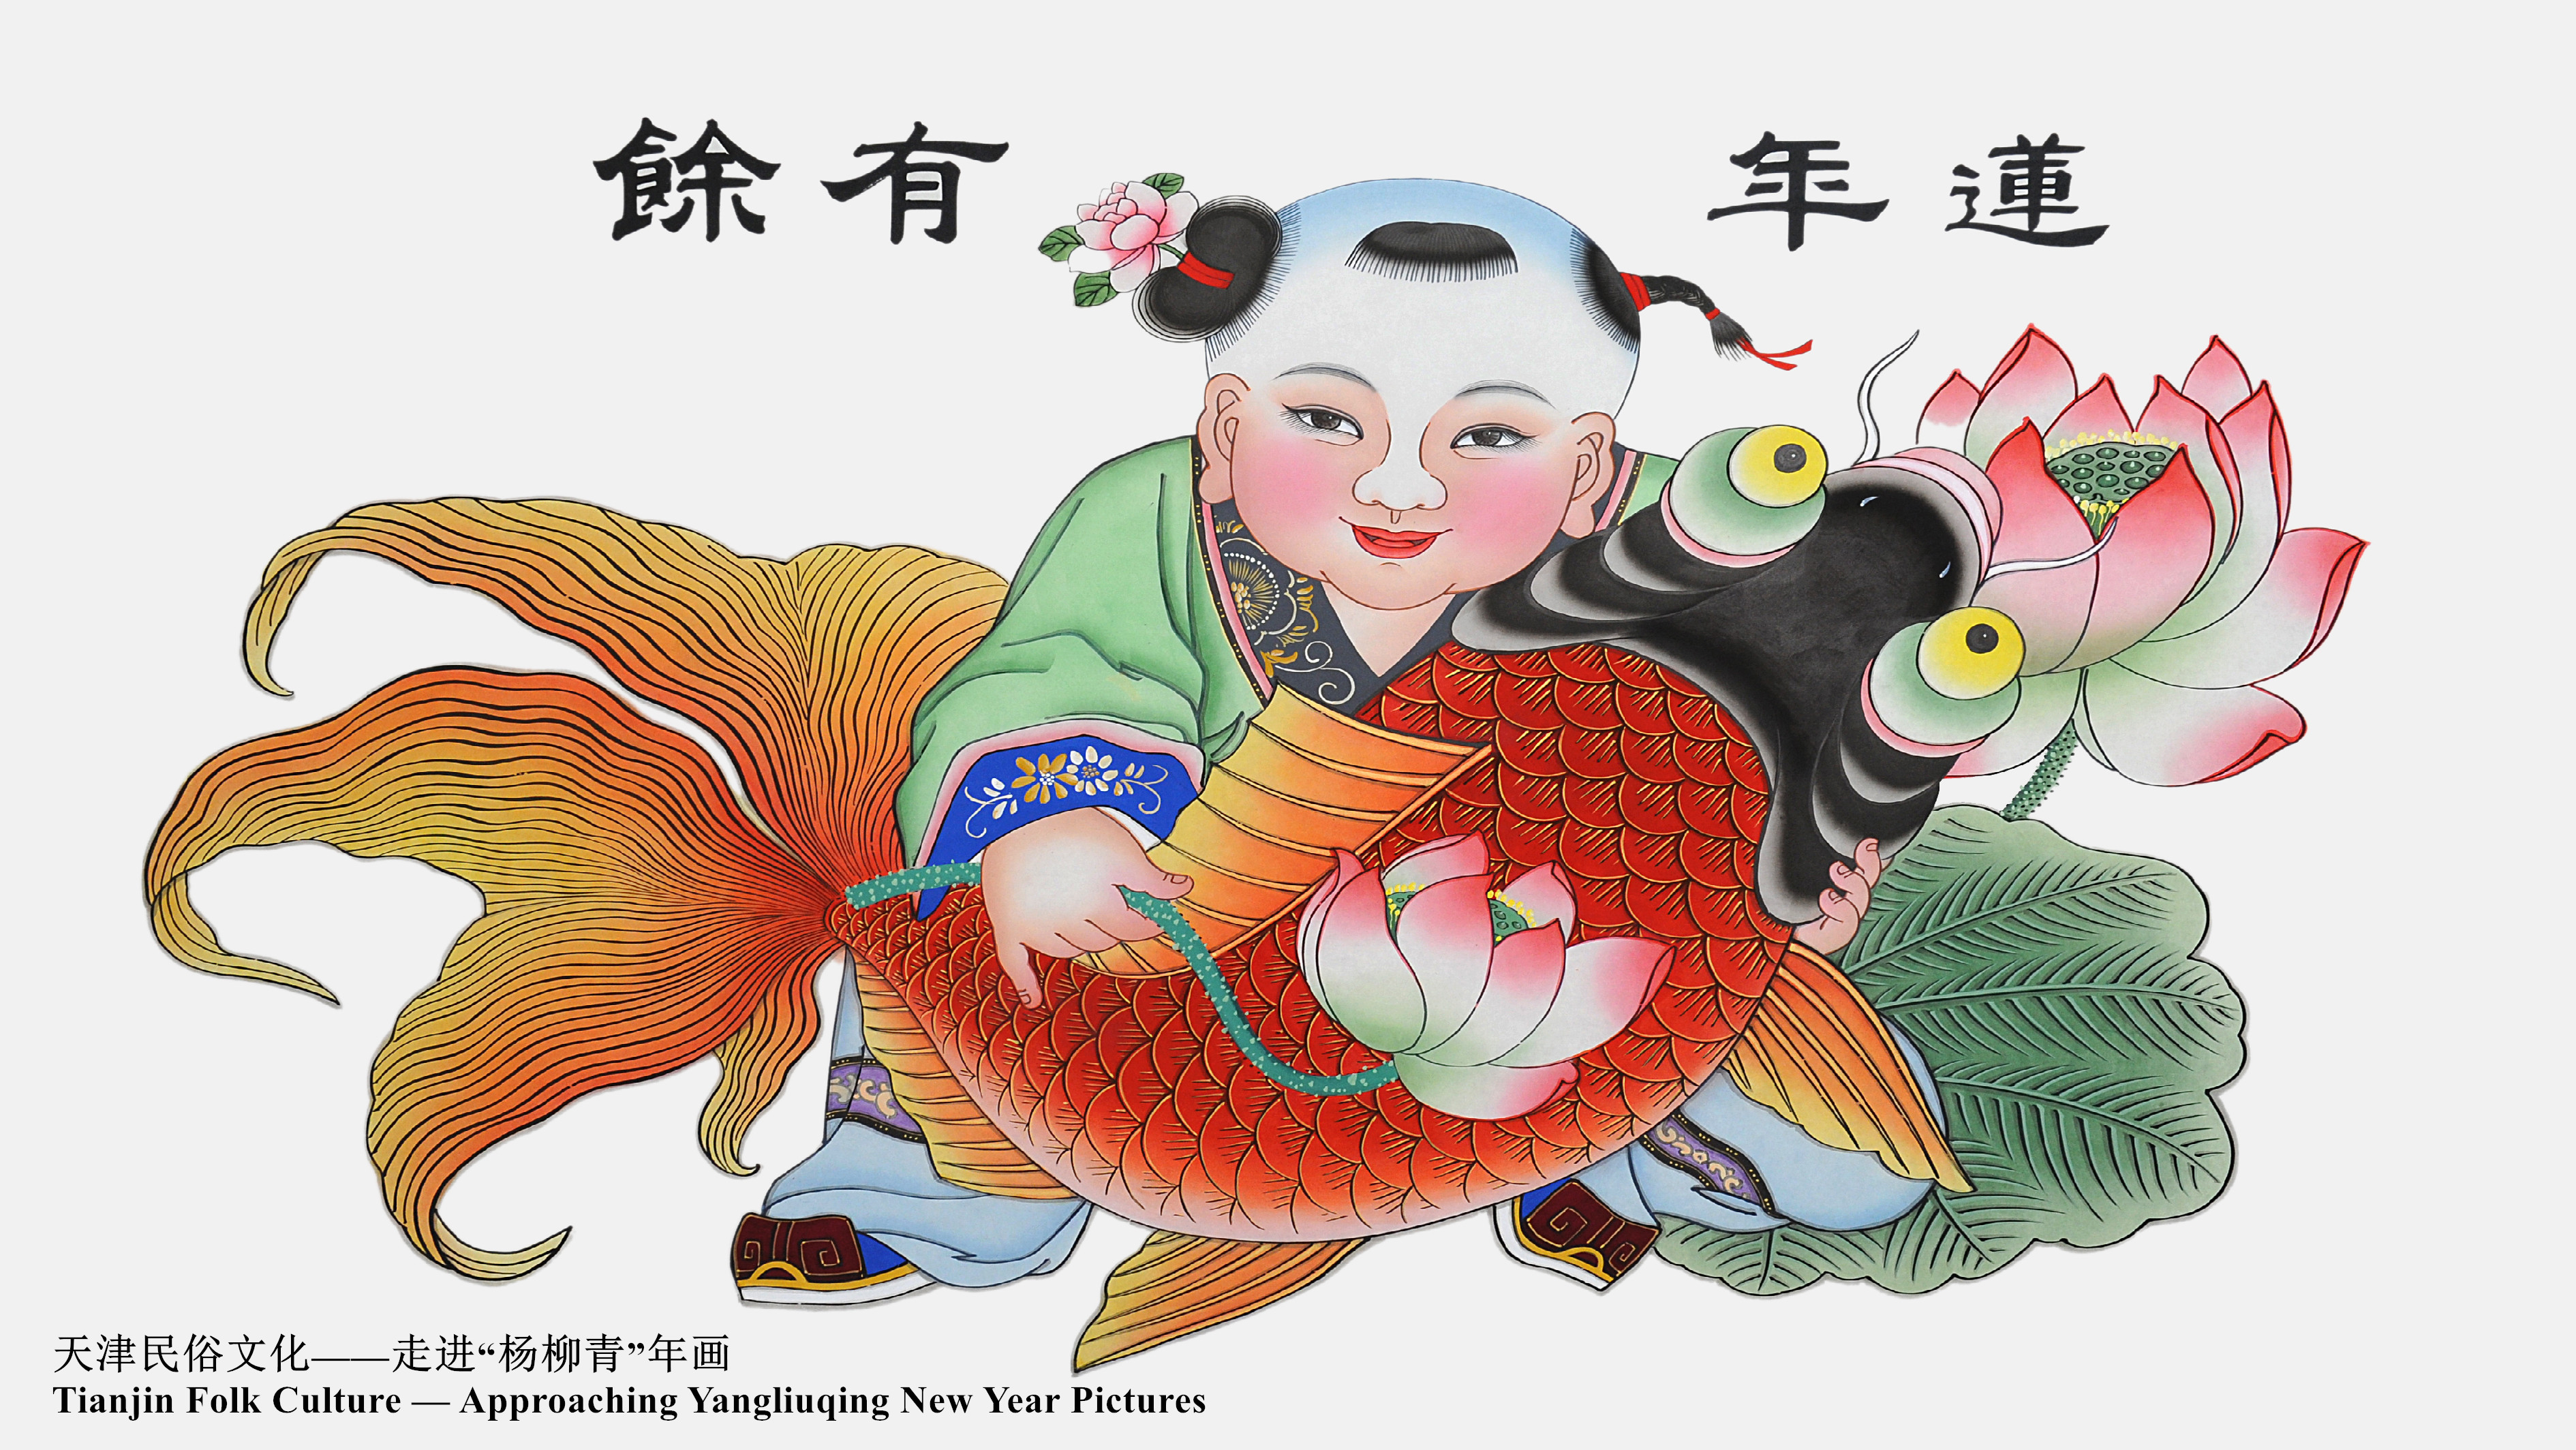 Tianjin Folk Culture — Approaching Yangliuqing New Year Pictures